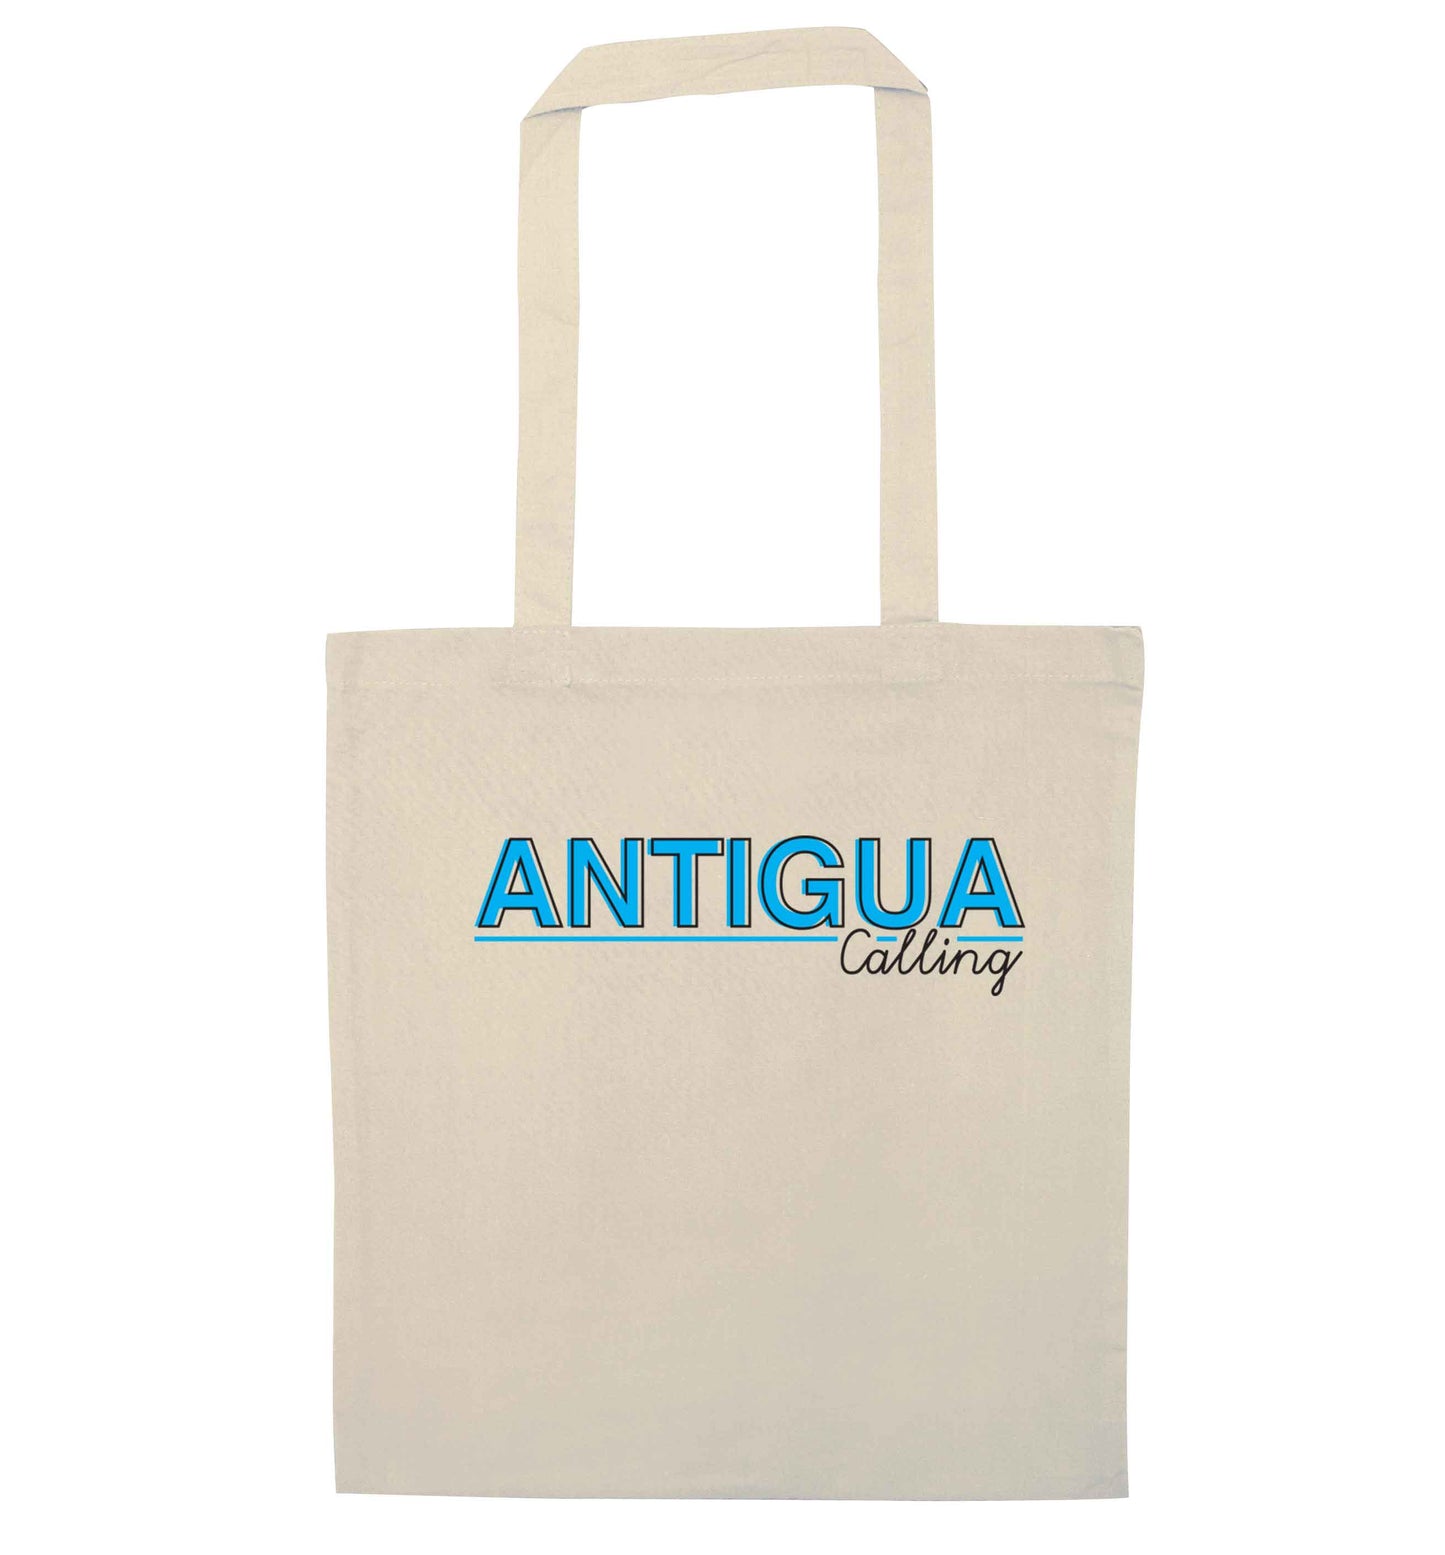 Antigua calling natural tote bag